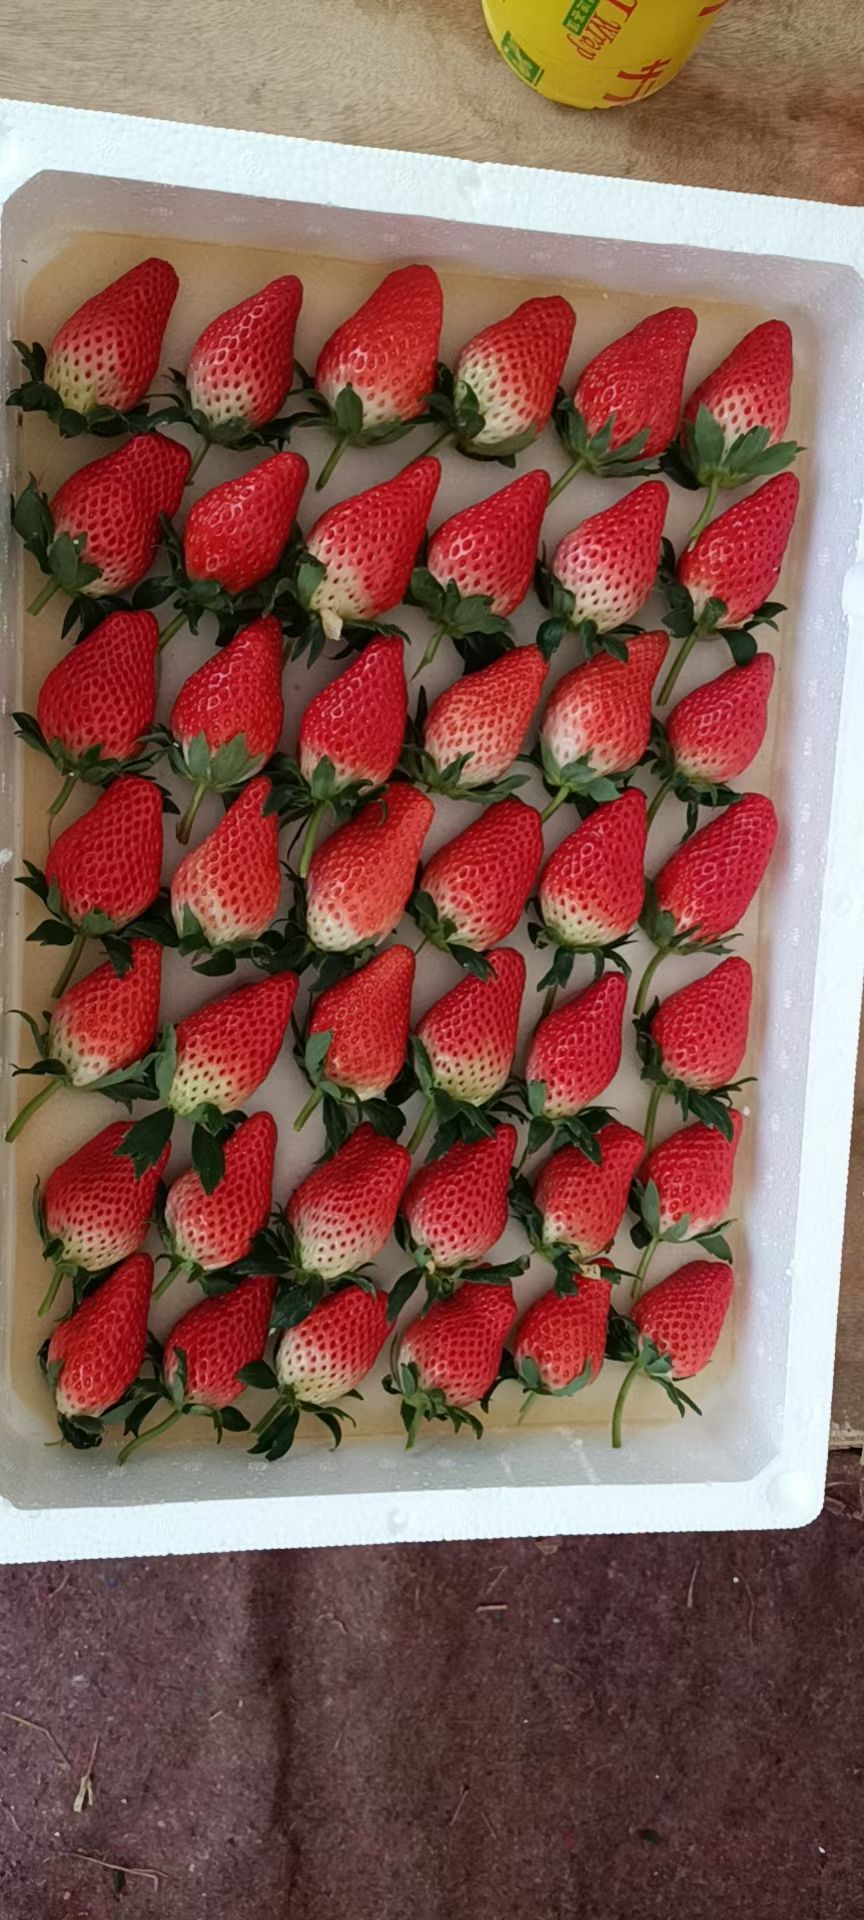 甜宝草莓 奶油草莓,色泽艳丽,口感清香